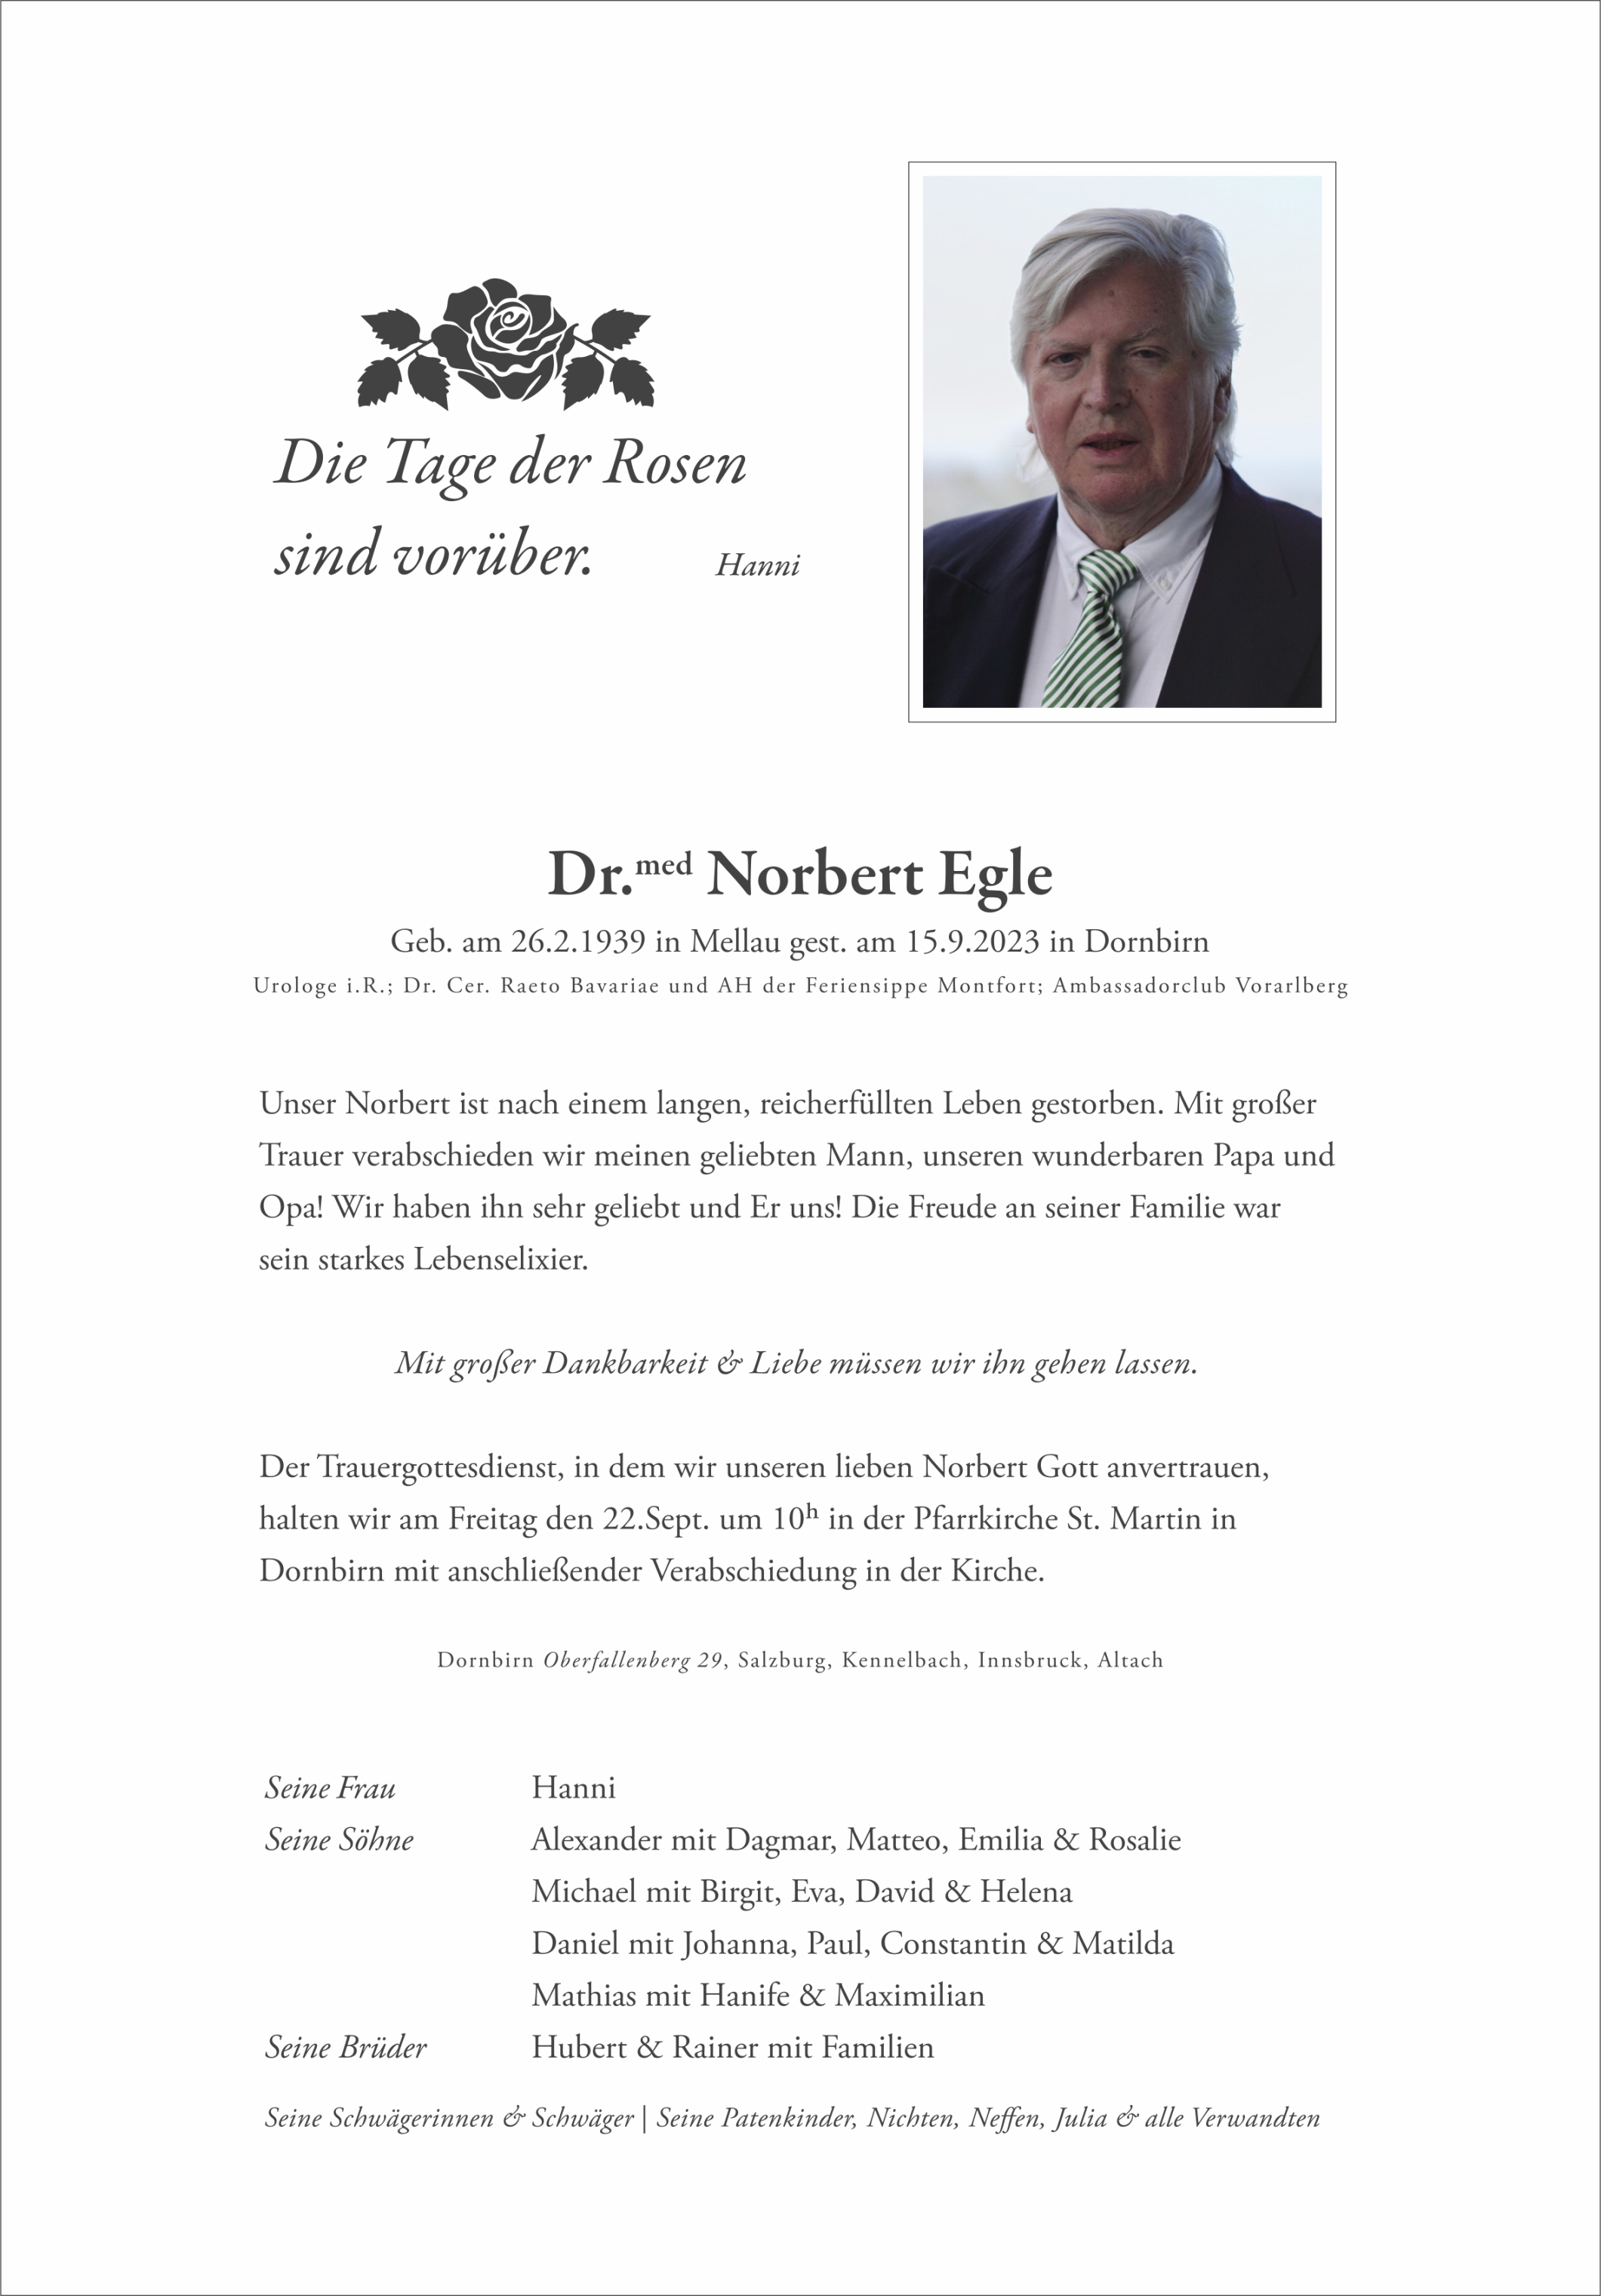 Dr. Norbert Egle